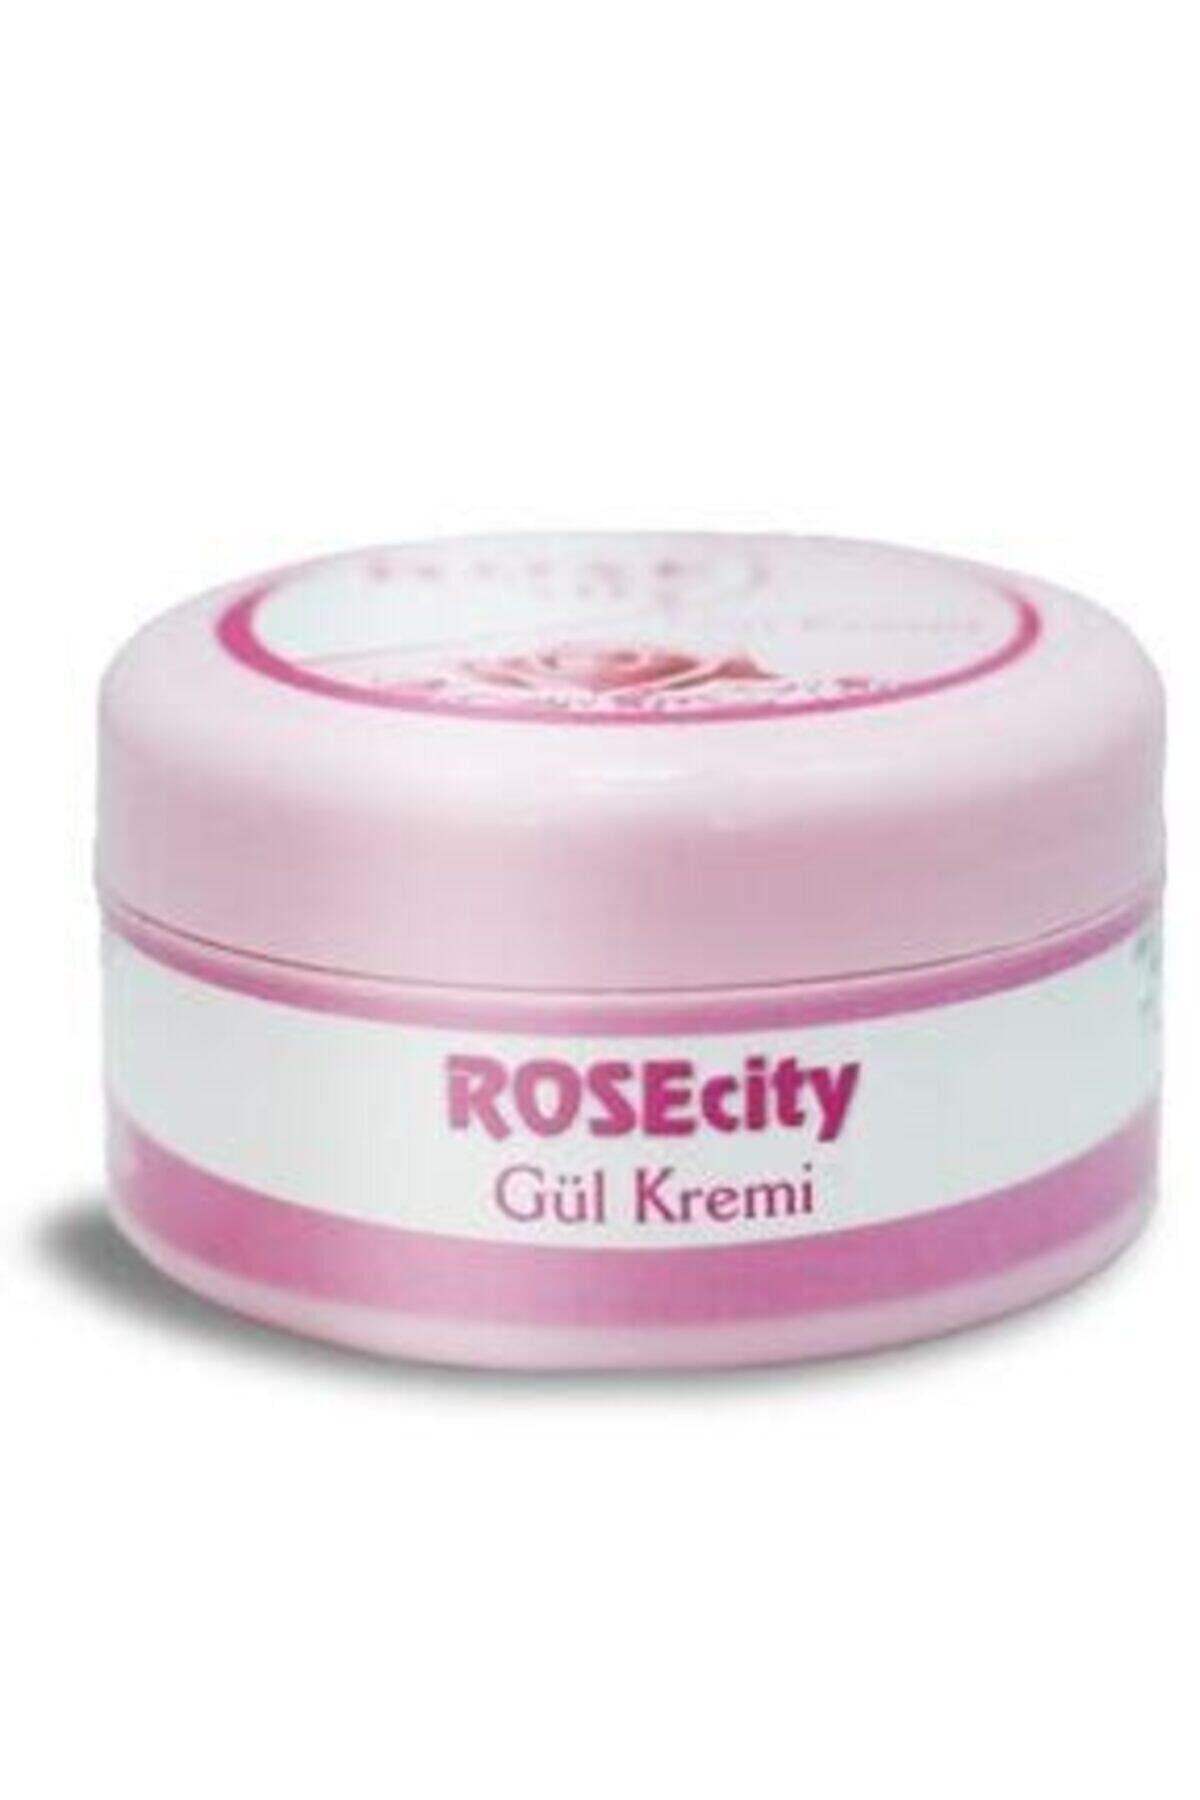 rosecity Gül Kremi 120 ml 2 Adet